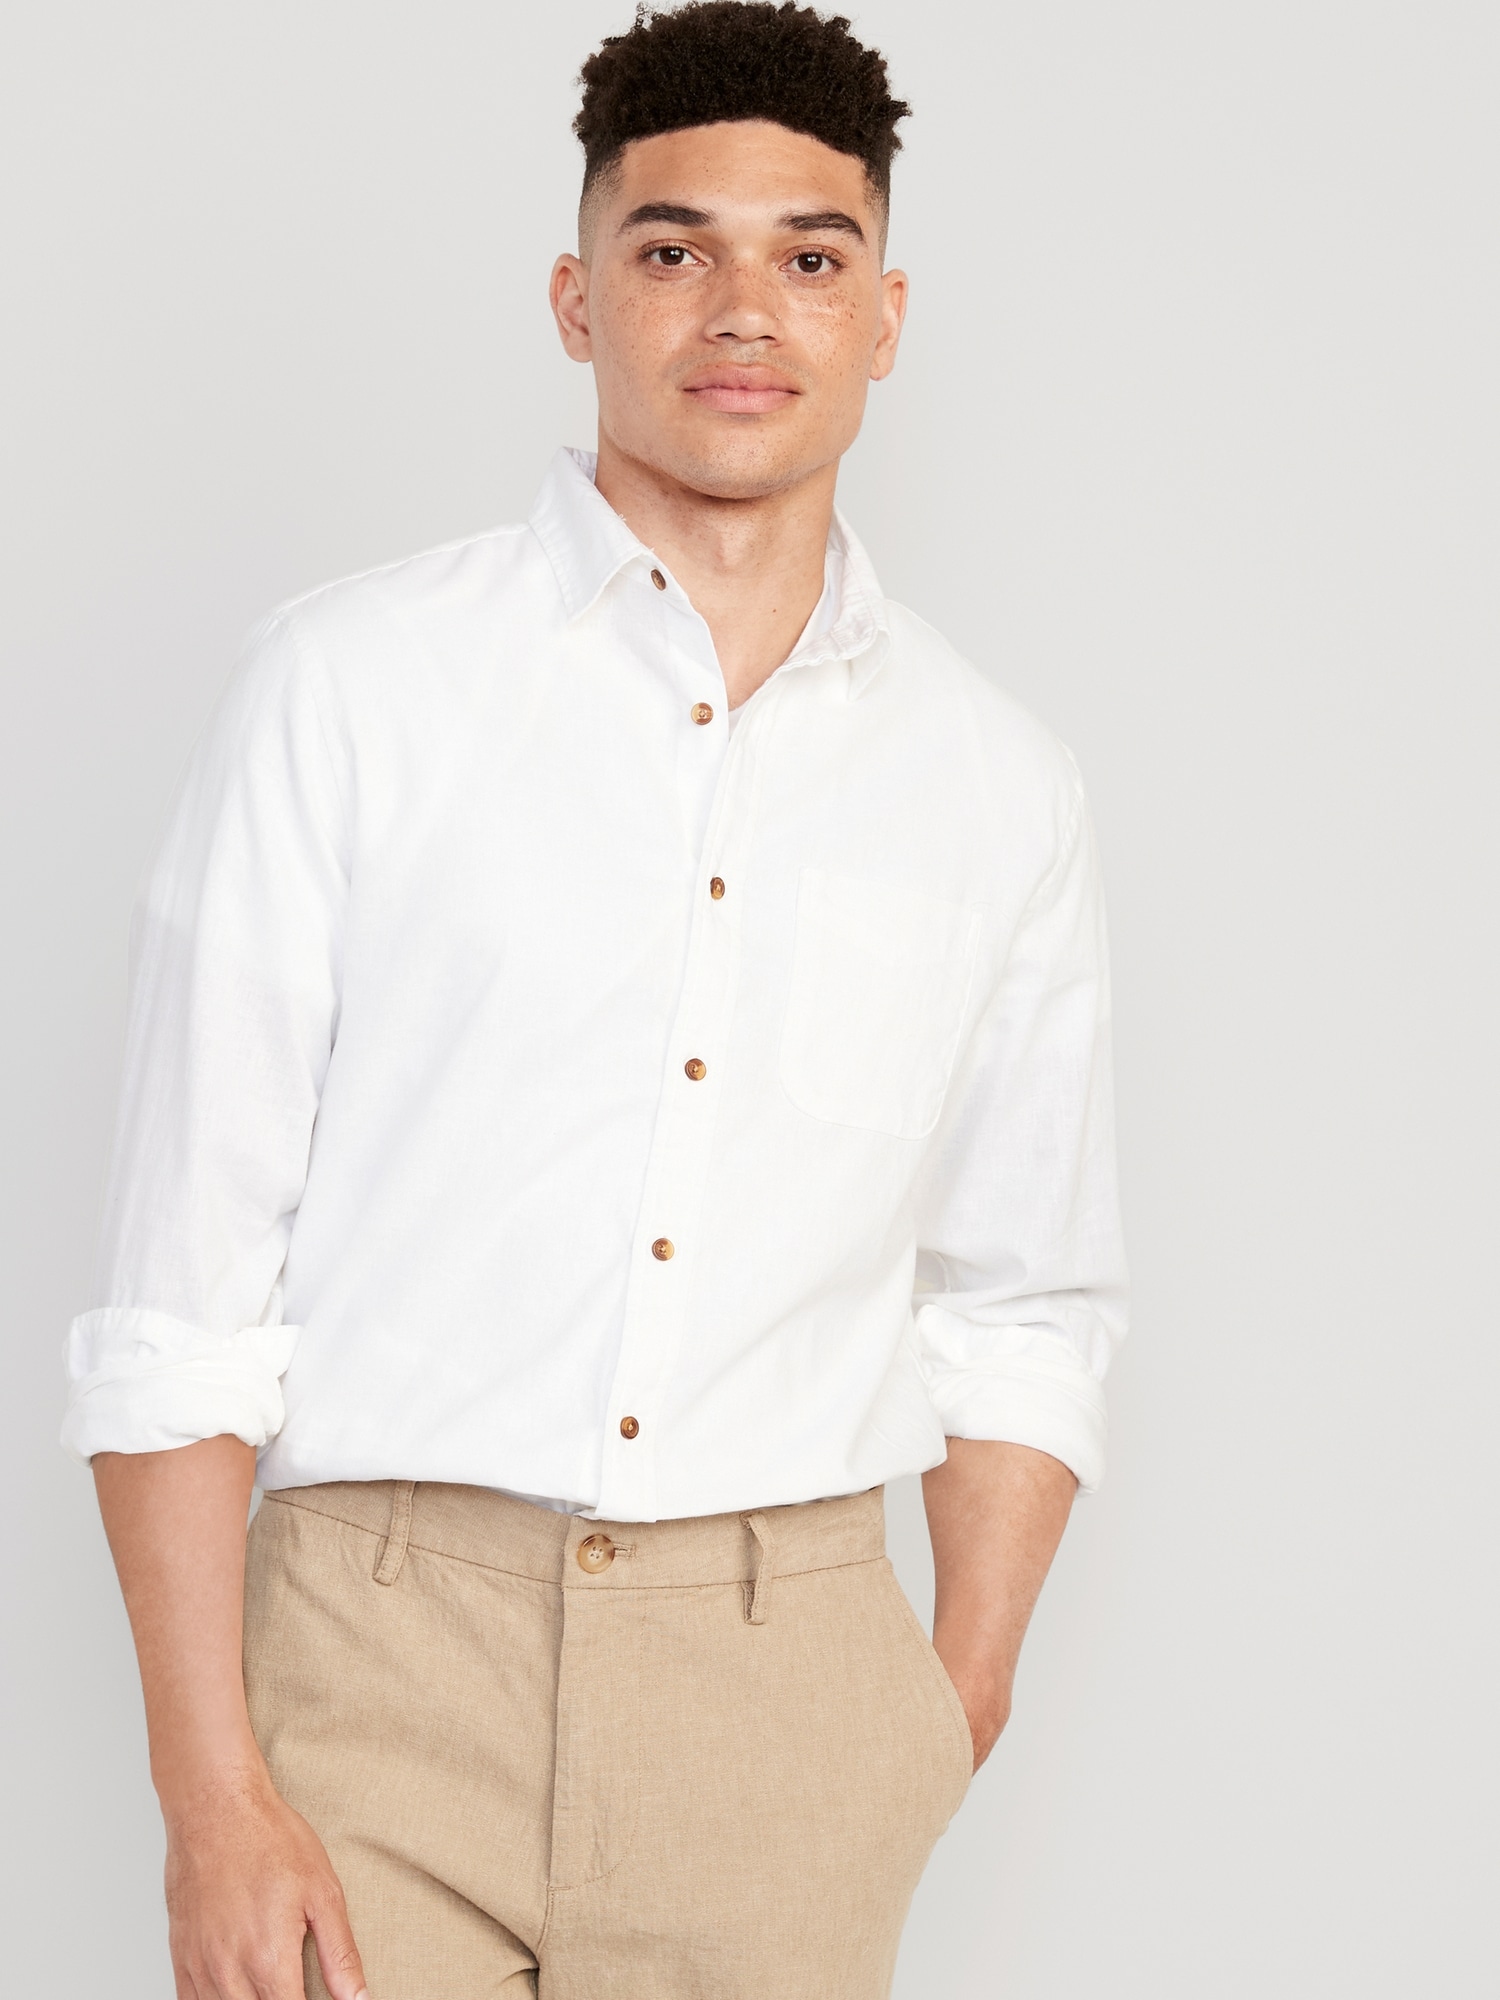 Men's Camp Collar Linen-Blend Shirt, Men's Tops